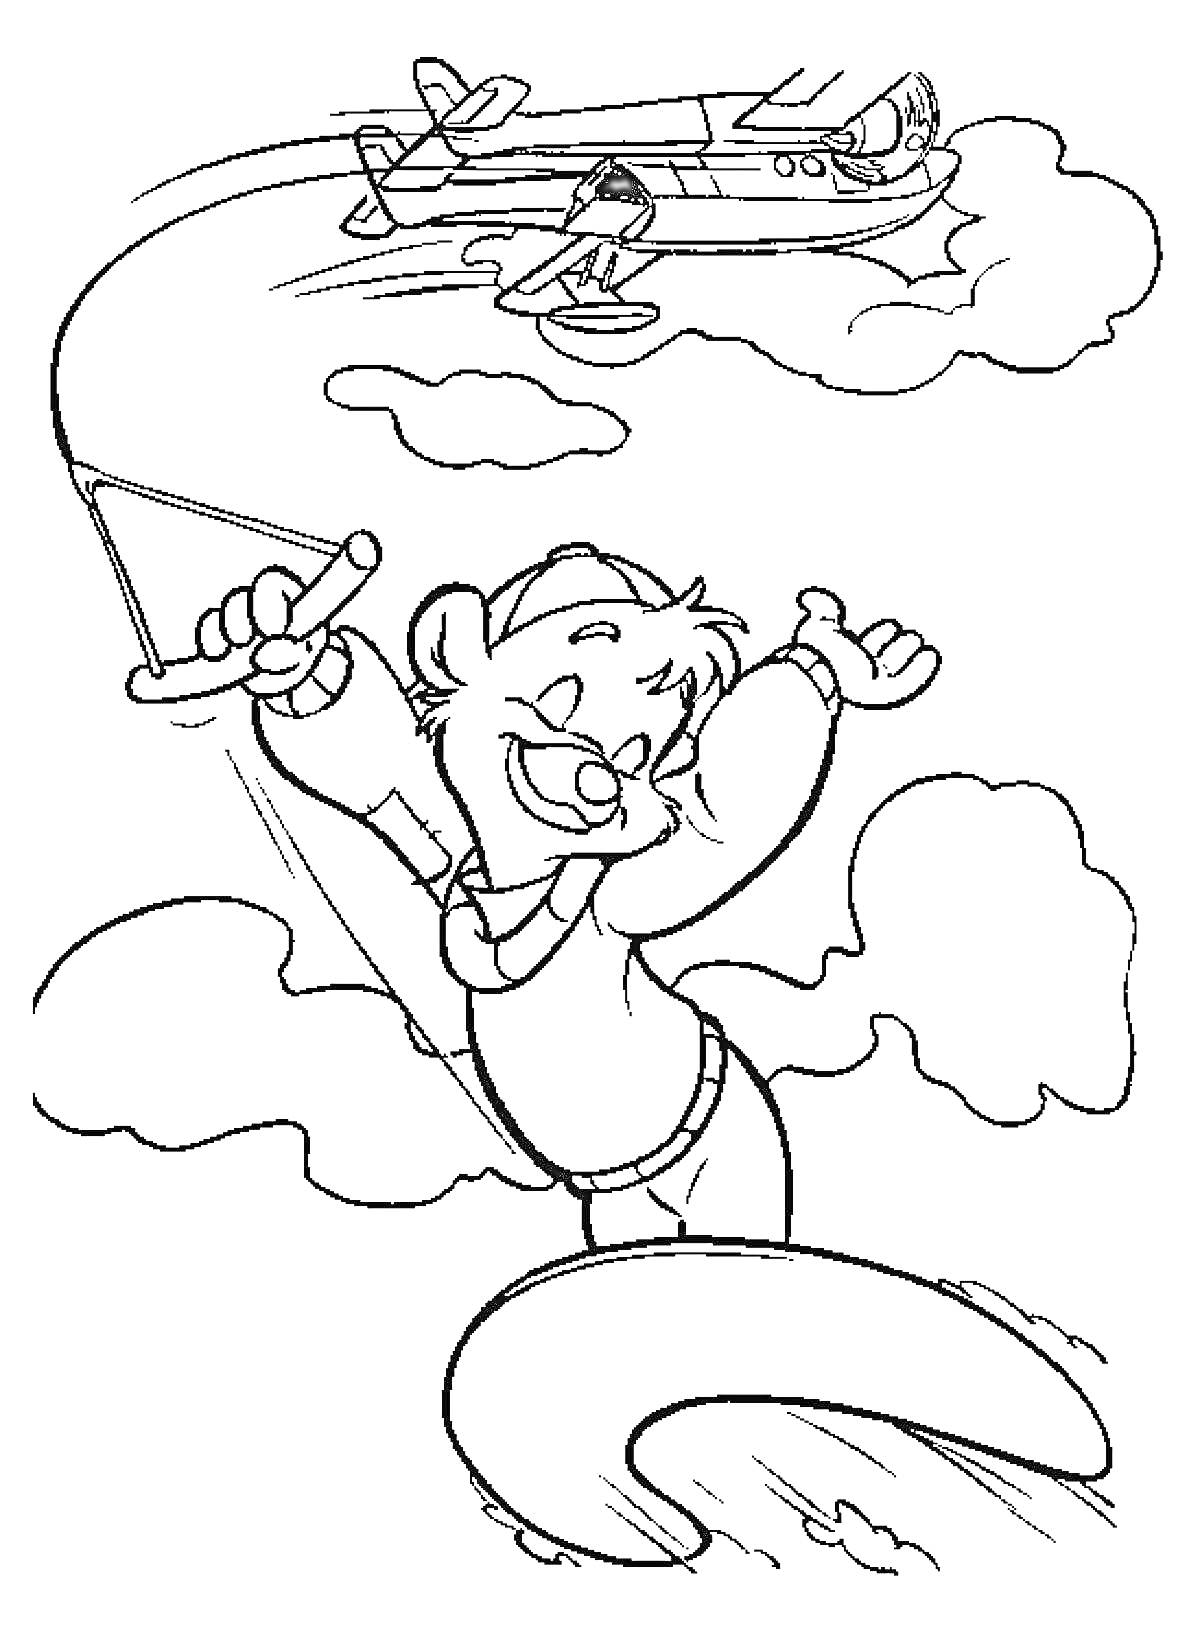 Радующийся персонаж с хвостом, держащийся за пропеллер и самолётом на заднем плане